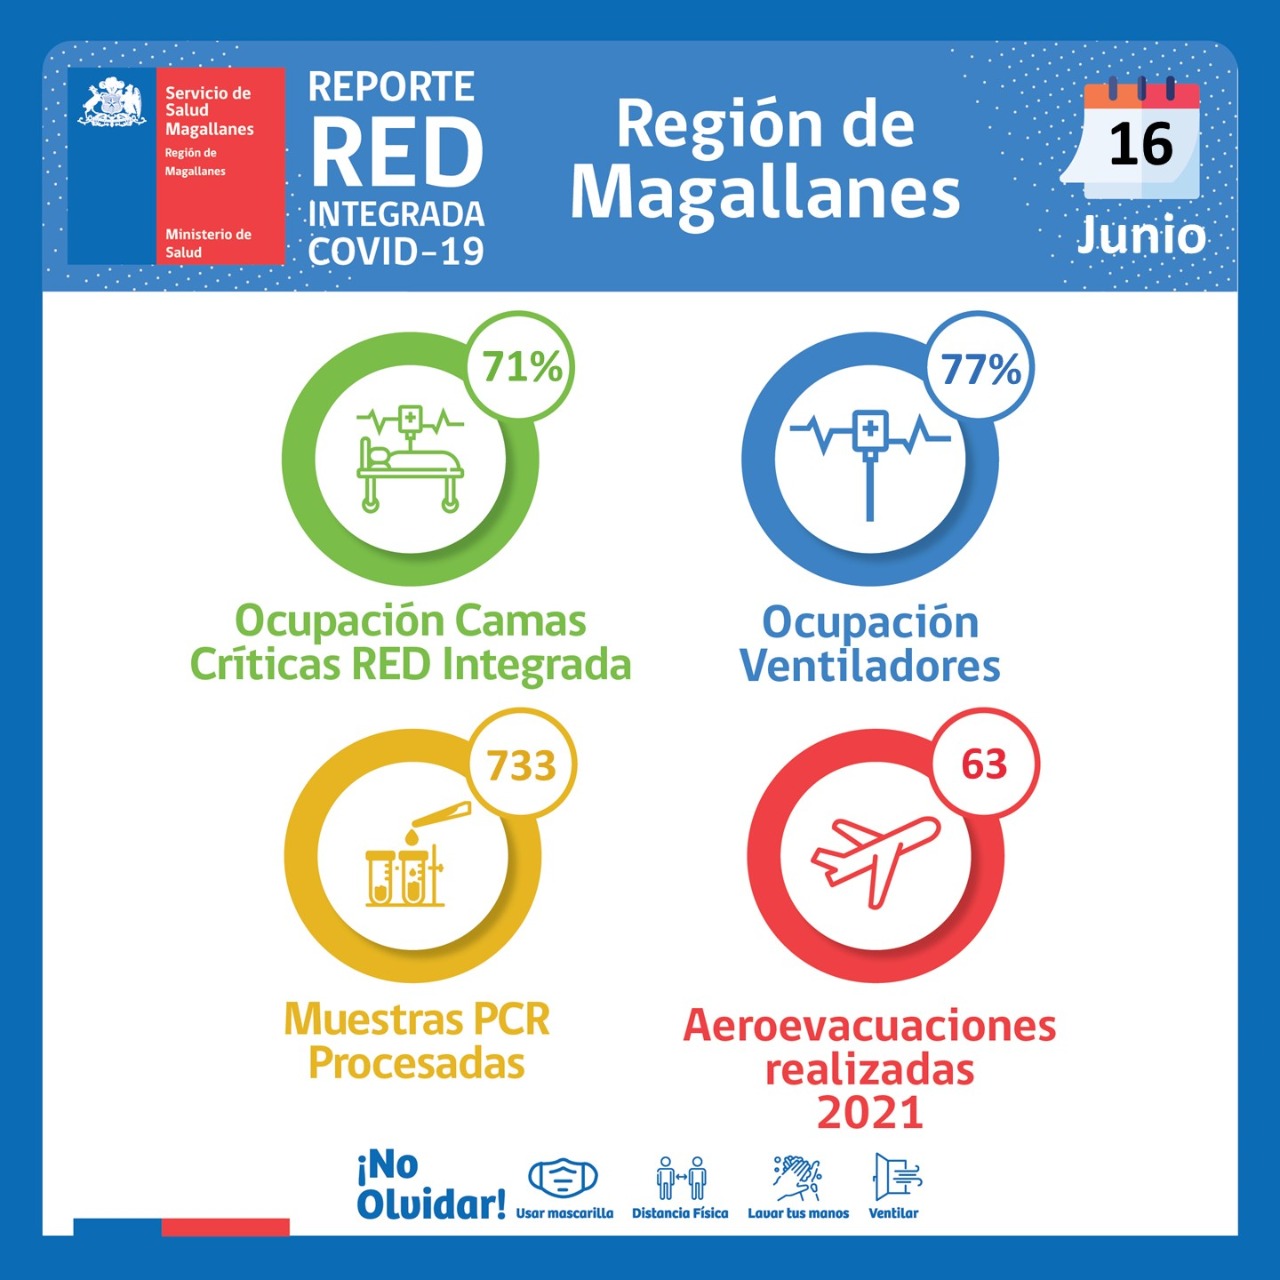 Estado de la red integrada covid19 en Magallanes, al miércoles 16 de junio